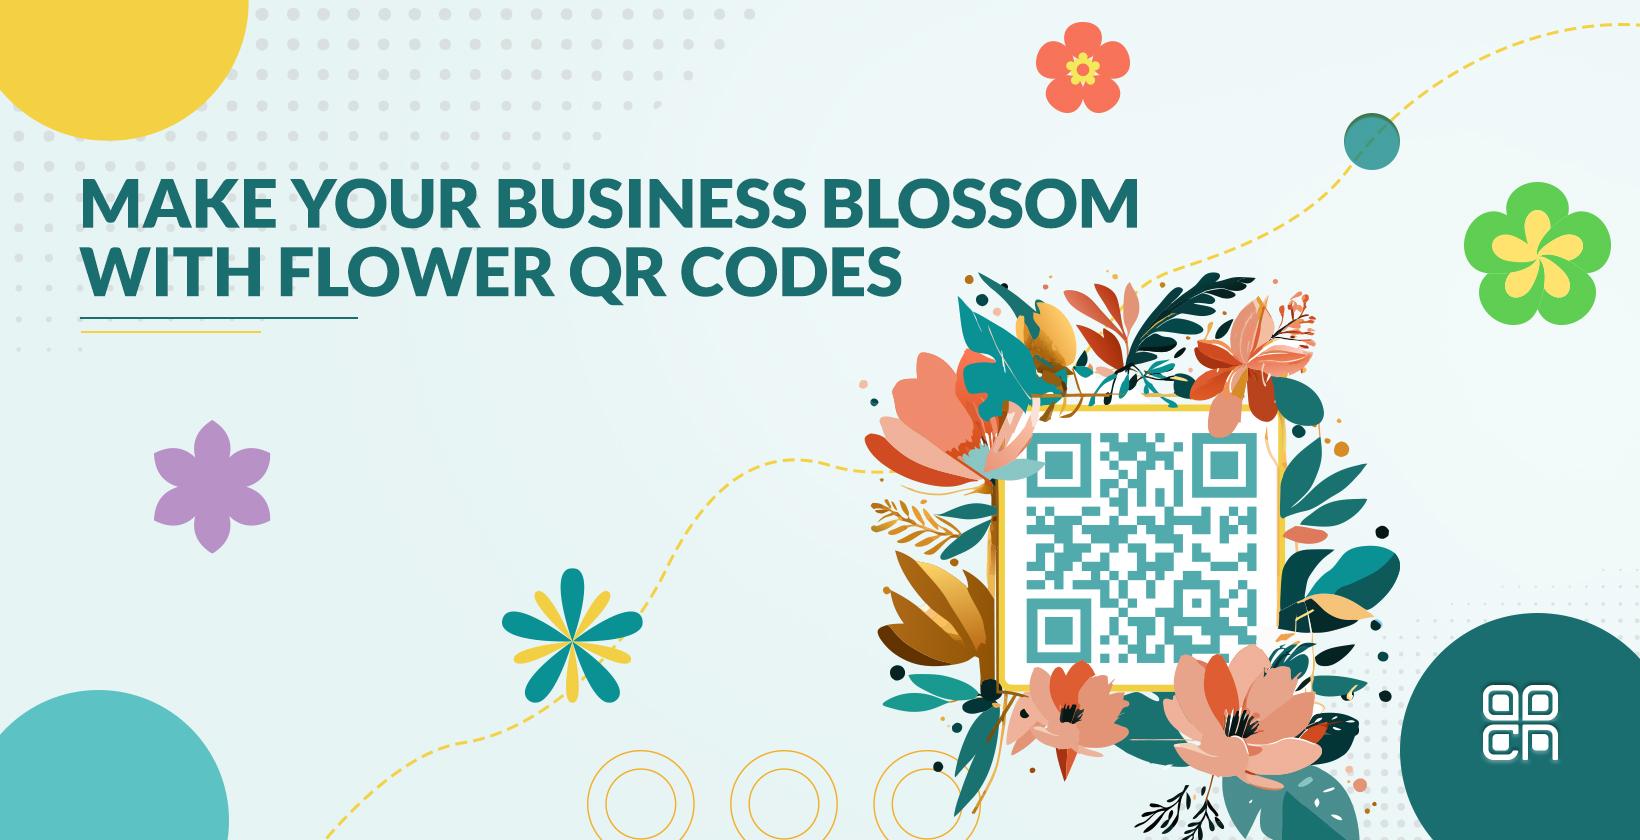 QR code for flower